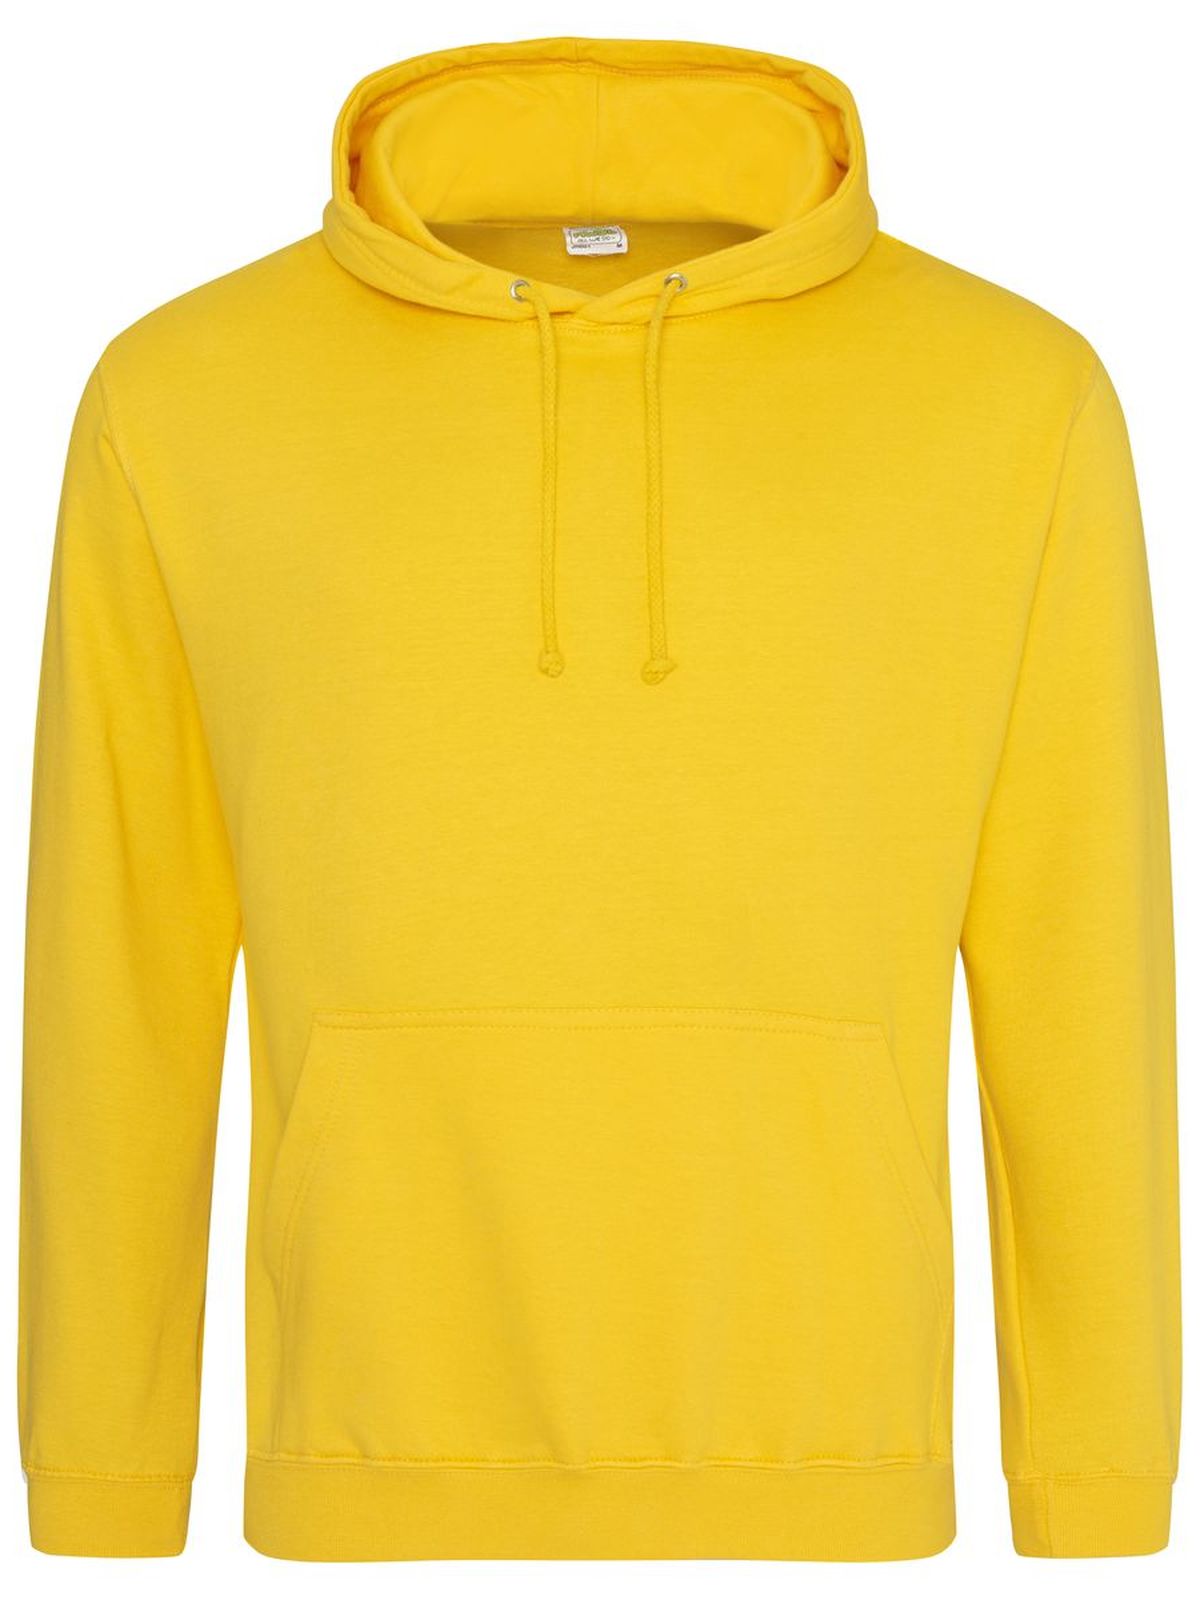 college-hoodie-gold.webp